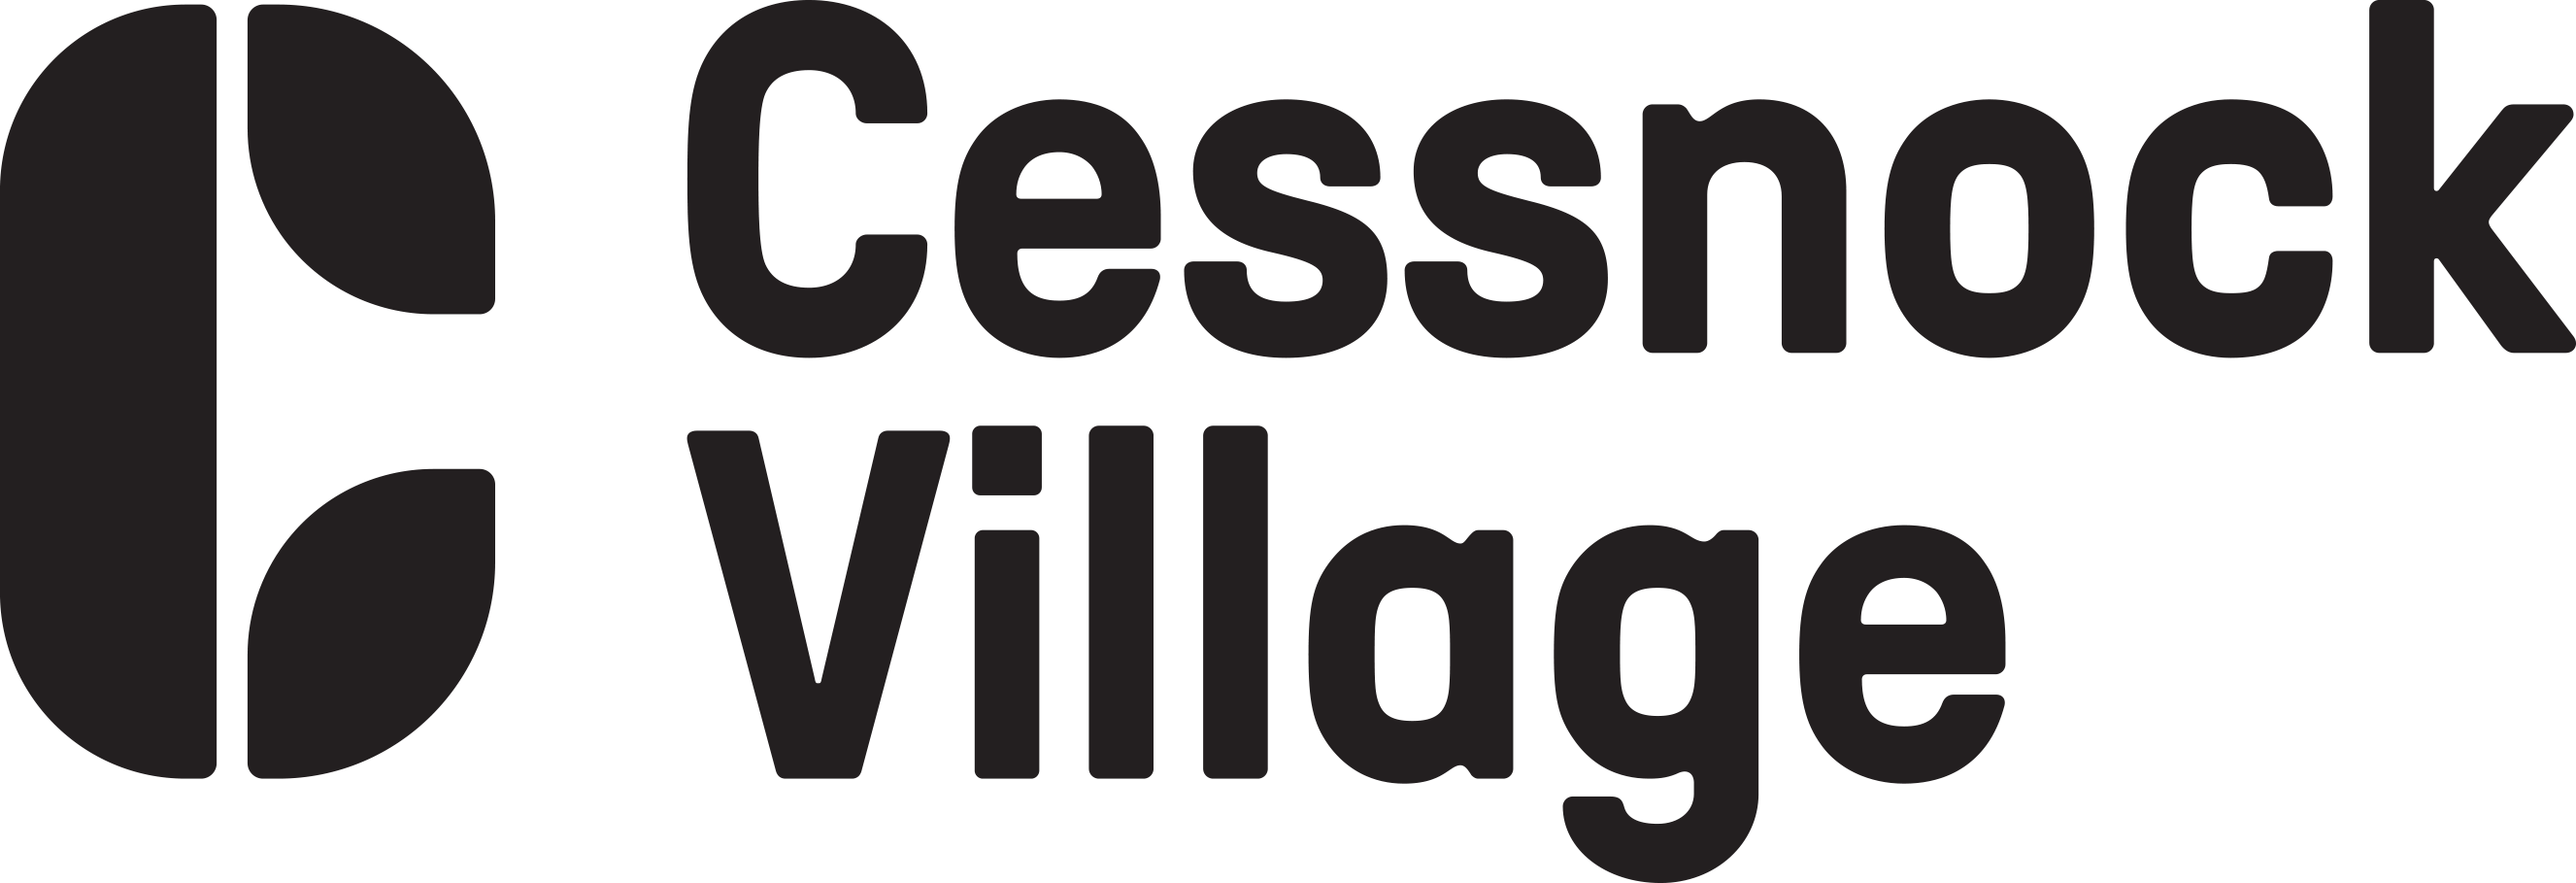 Cessnock Village Shopping Centre Logo